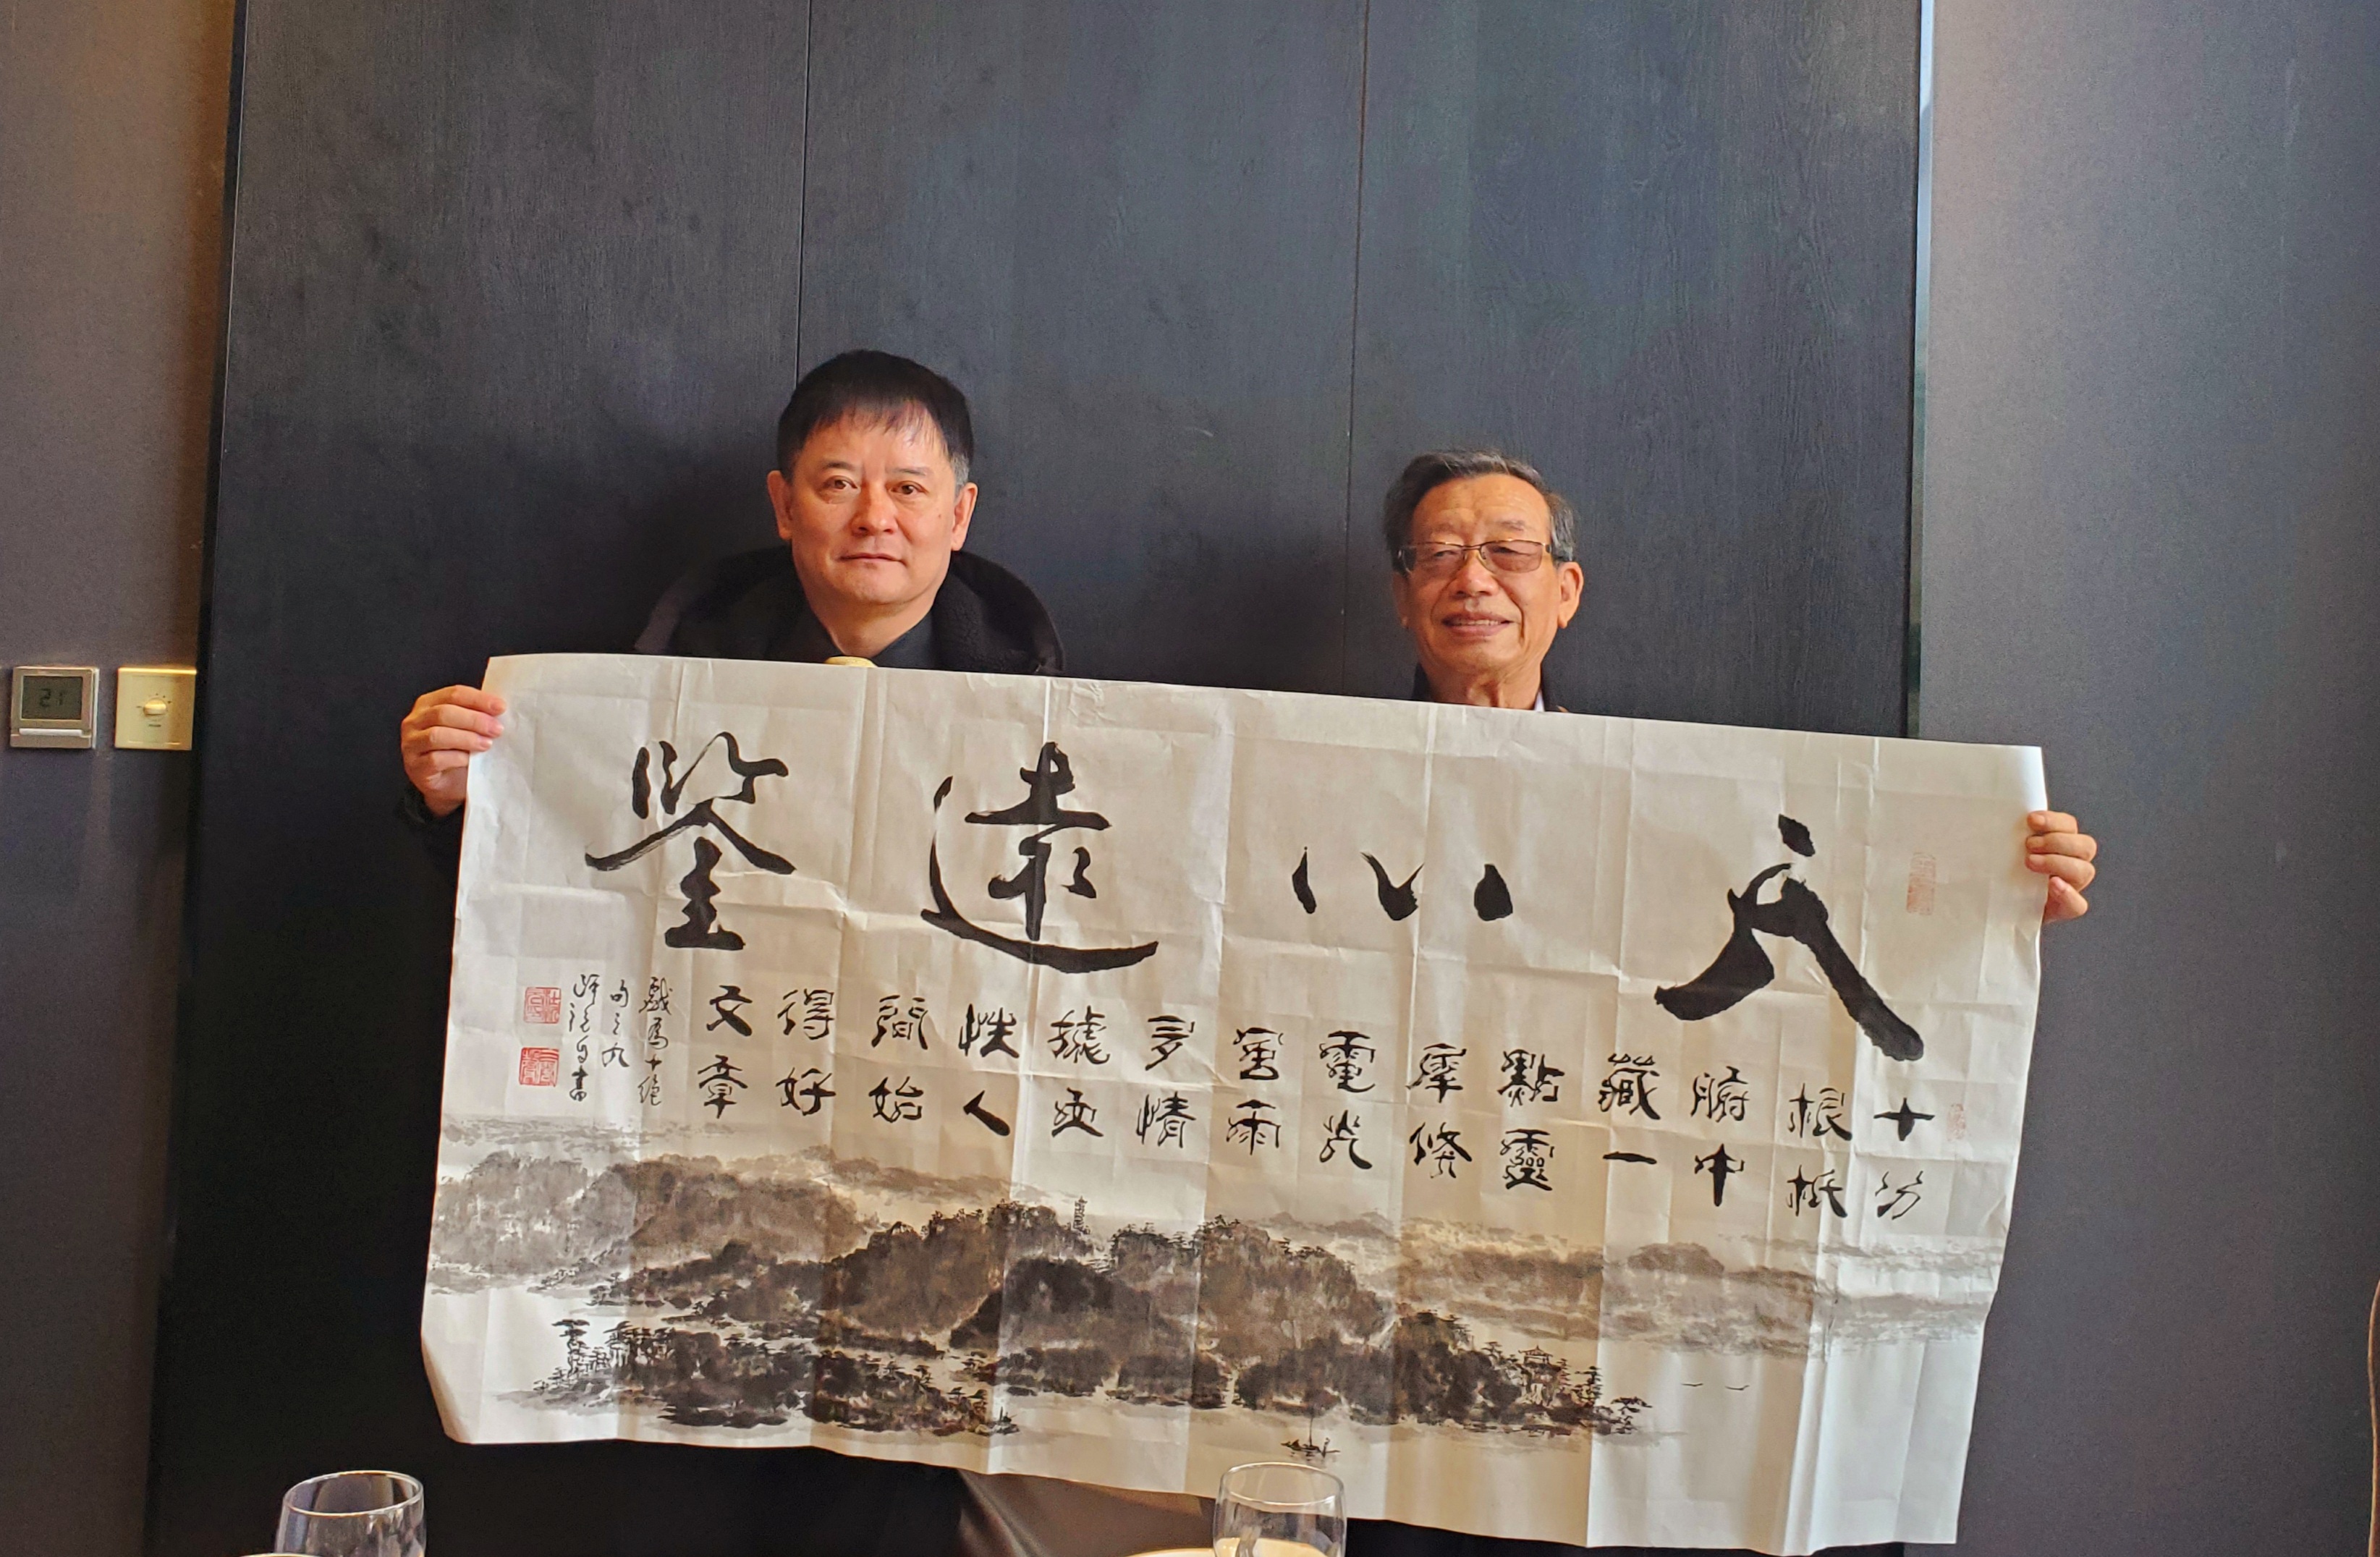 中国著名诗书画家杜新元向曹明权社长赠送原创诗书画新作品